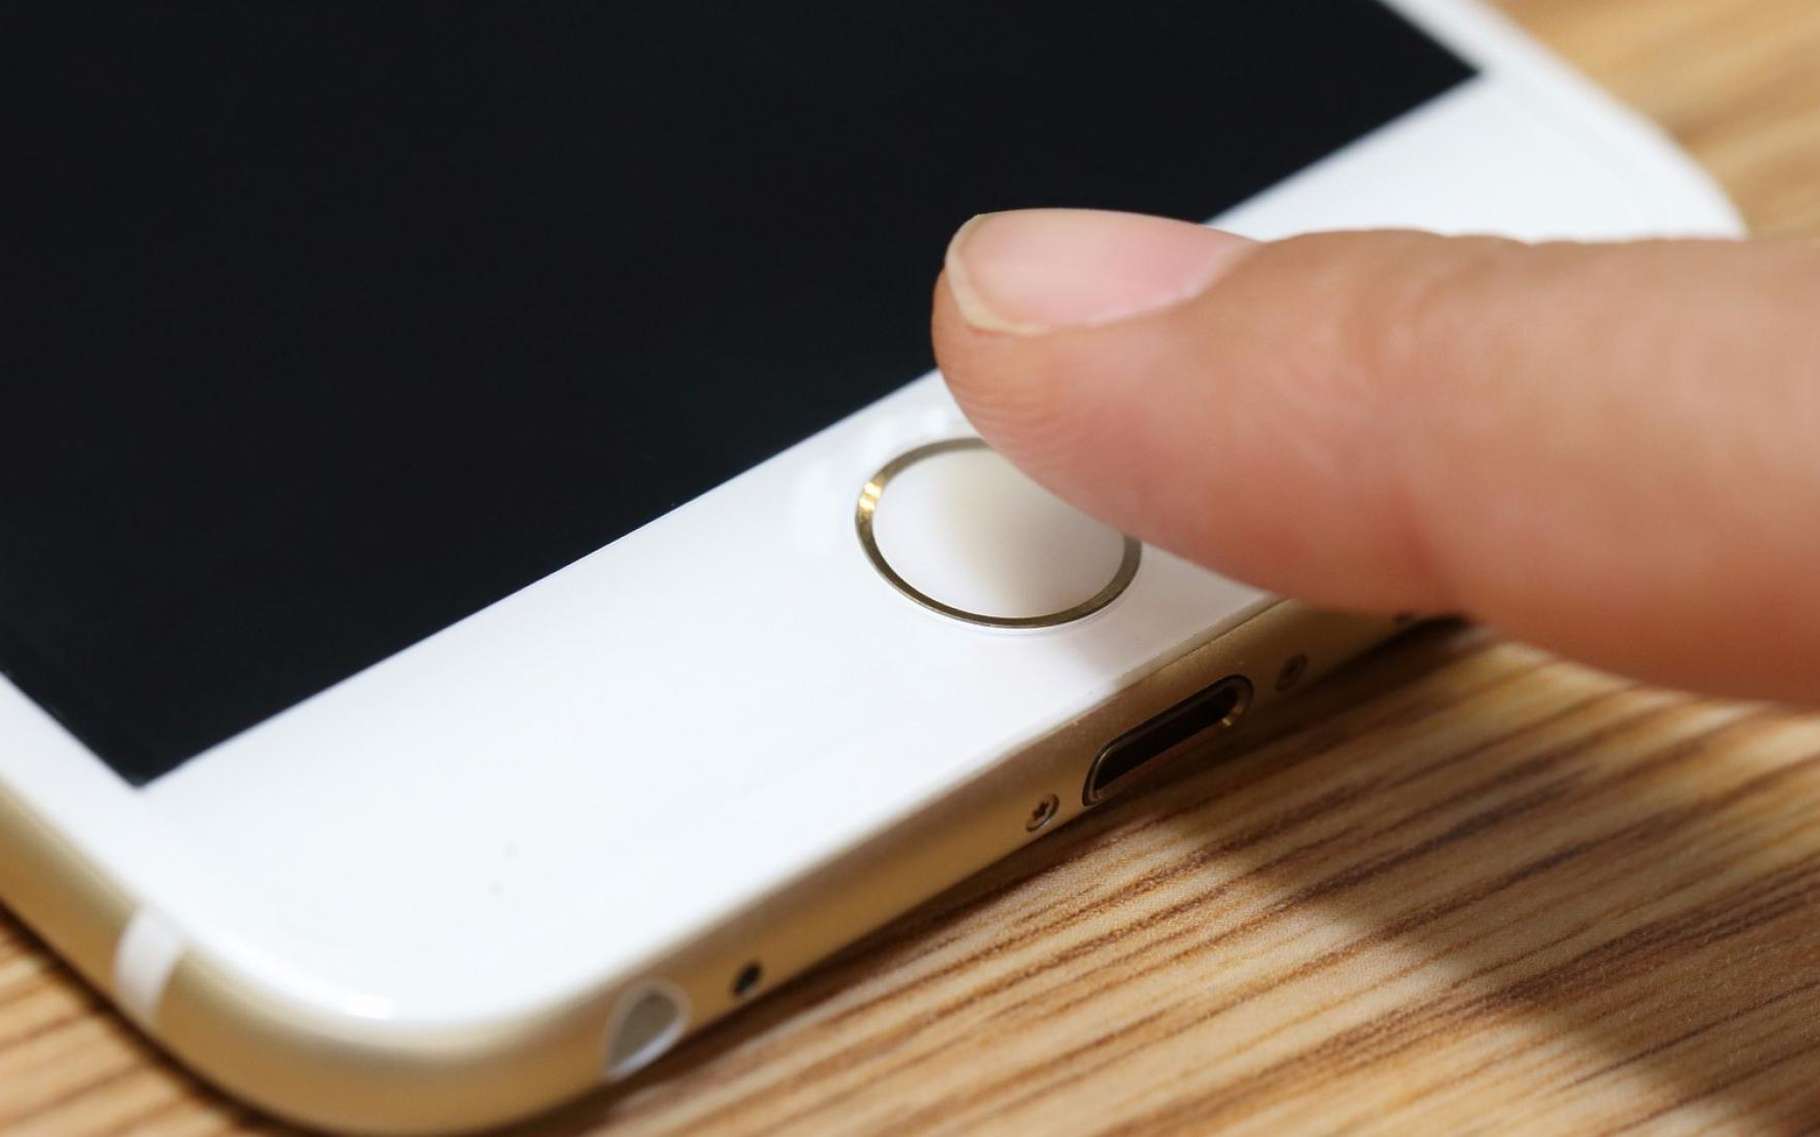 Les modèles récents d'iPhone et l'iPad sont équipés du lecteur d'empreintes digitales Touch ID. Apple aimerait exploiter ce capteur biométrique ainsi que d'autres, pour transformer le terminal en mouchard en cas de vol. © Charnsitr, Shutterstock